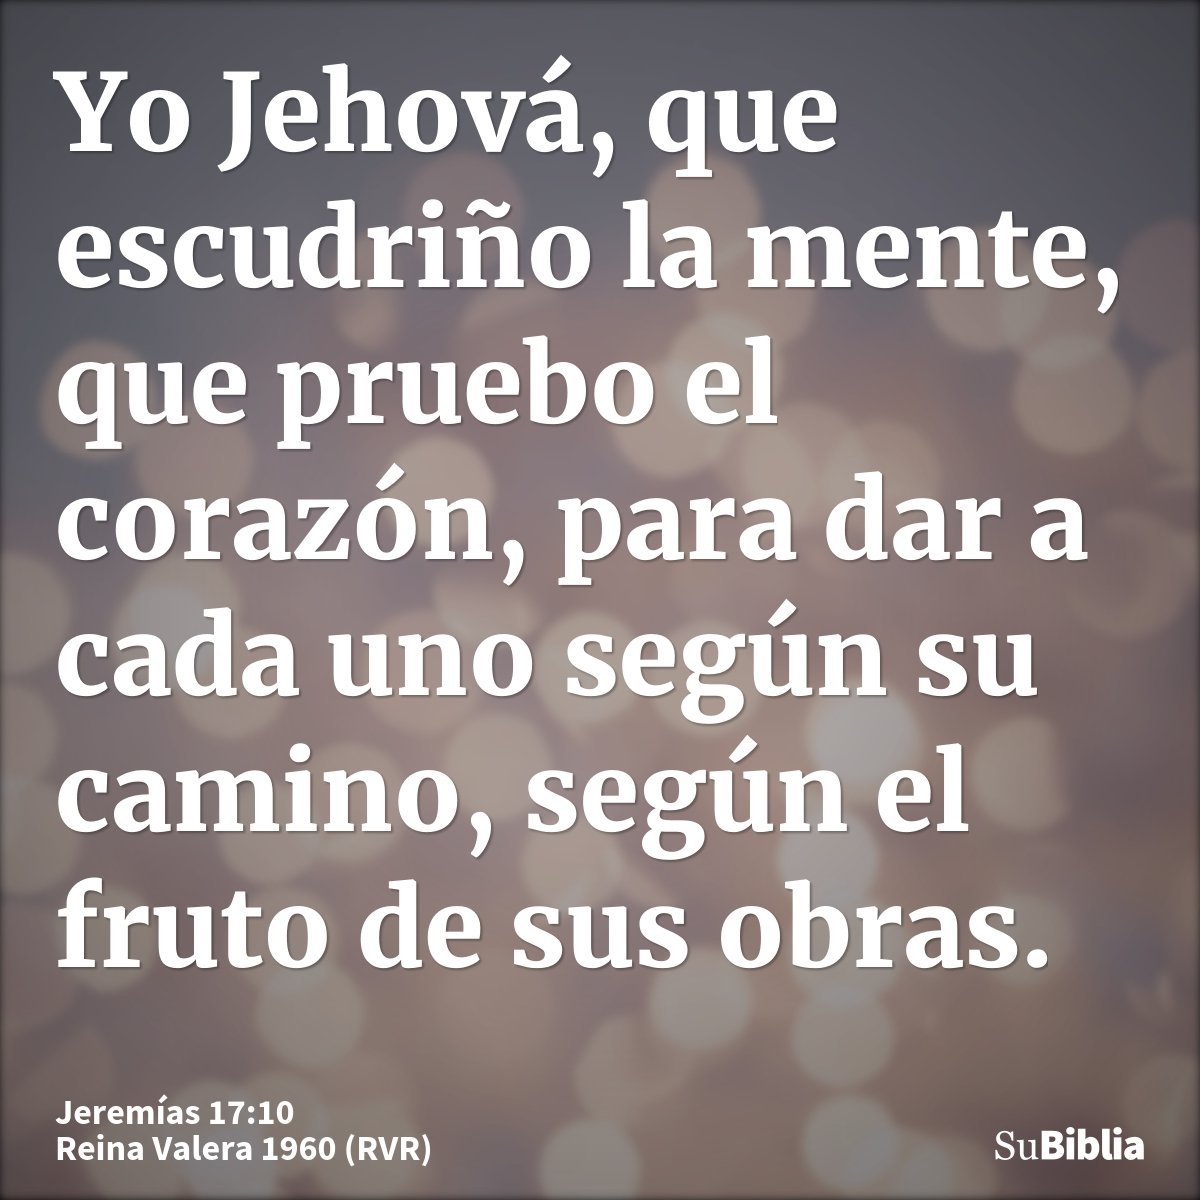 Yo Jehová, que escudriño la mente, que pruebo el corazón, para dar a cada uno según su camino, según el fruto de sus obras.